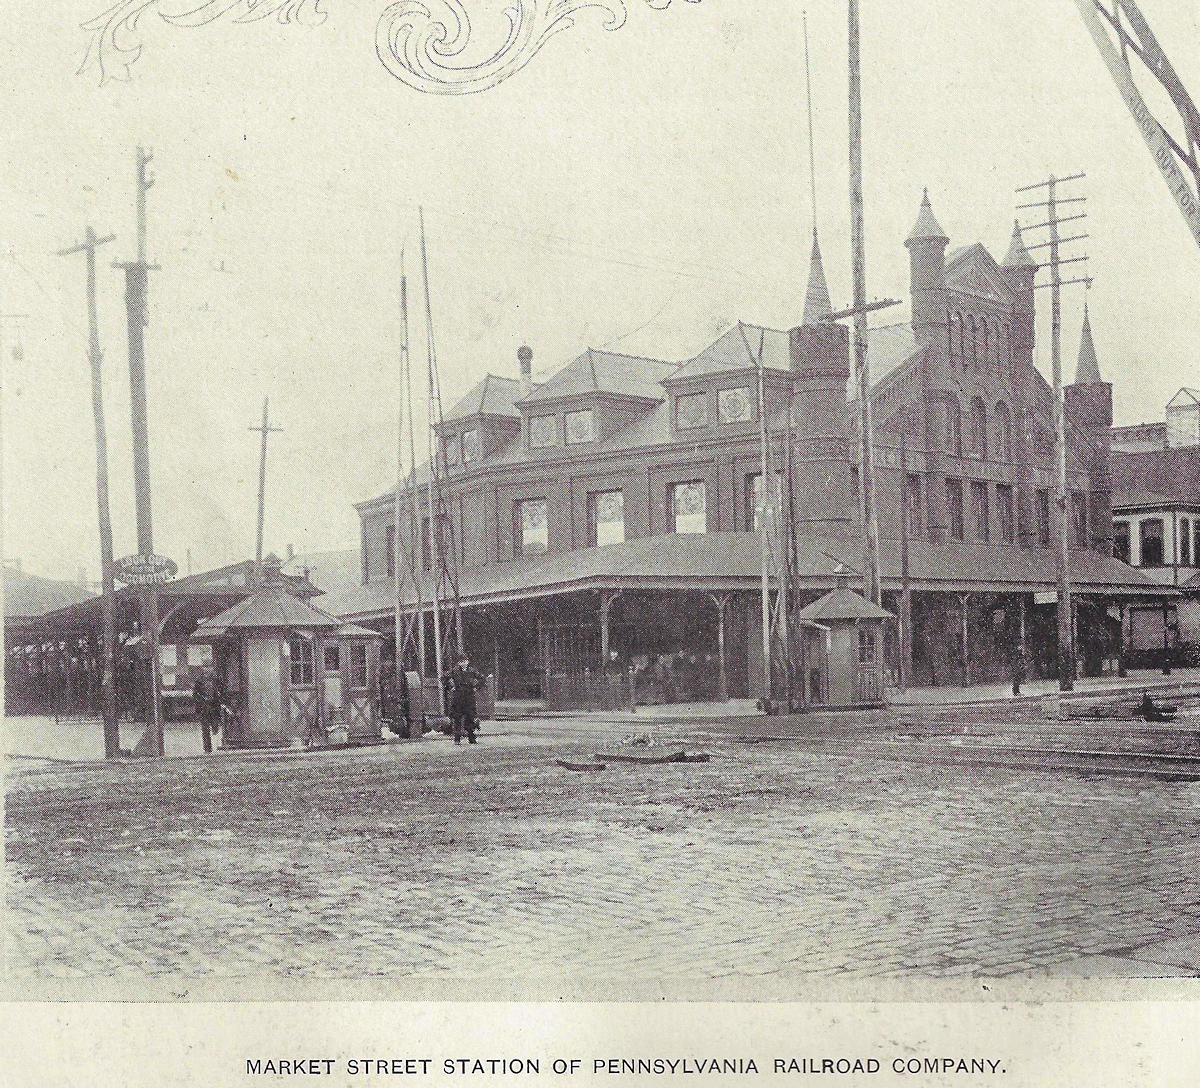 1901
